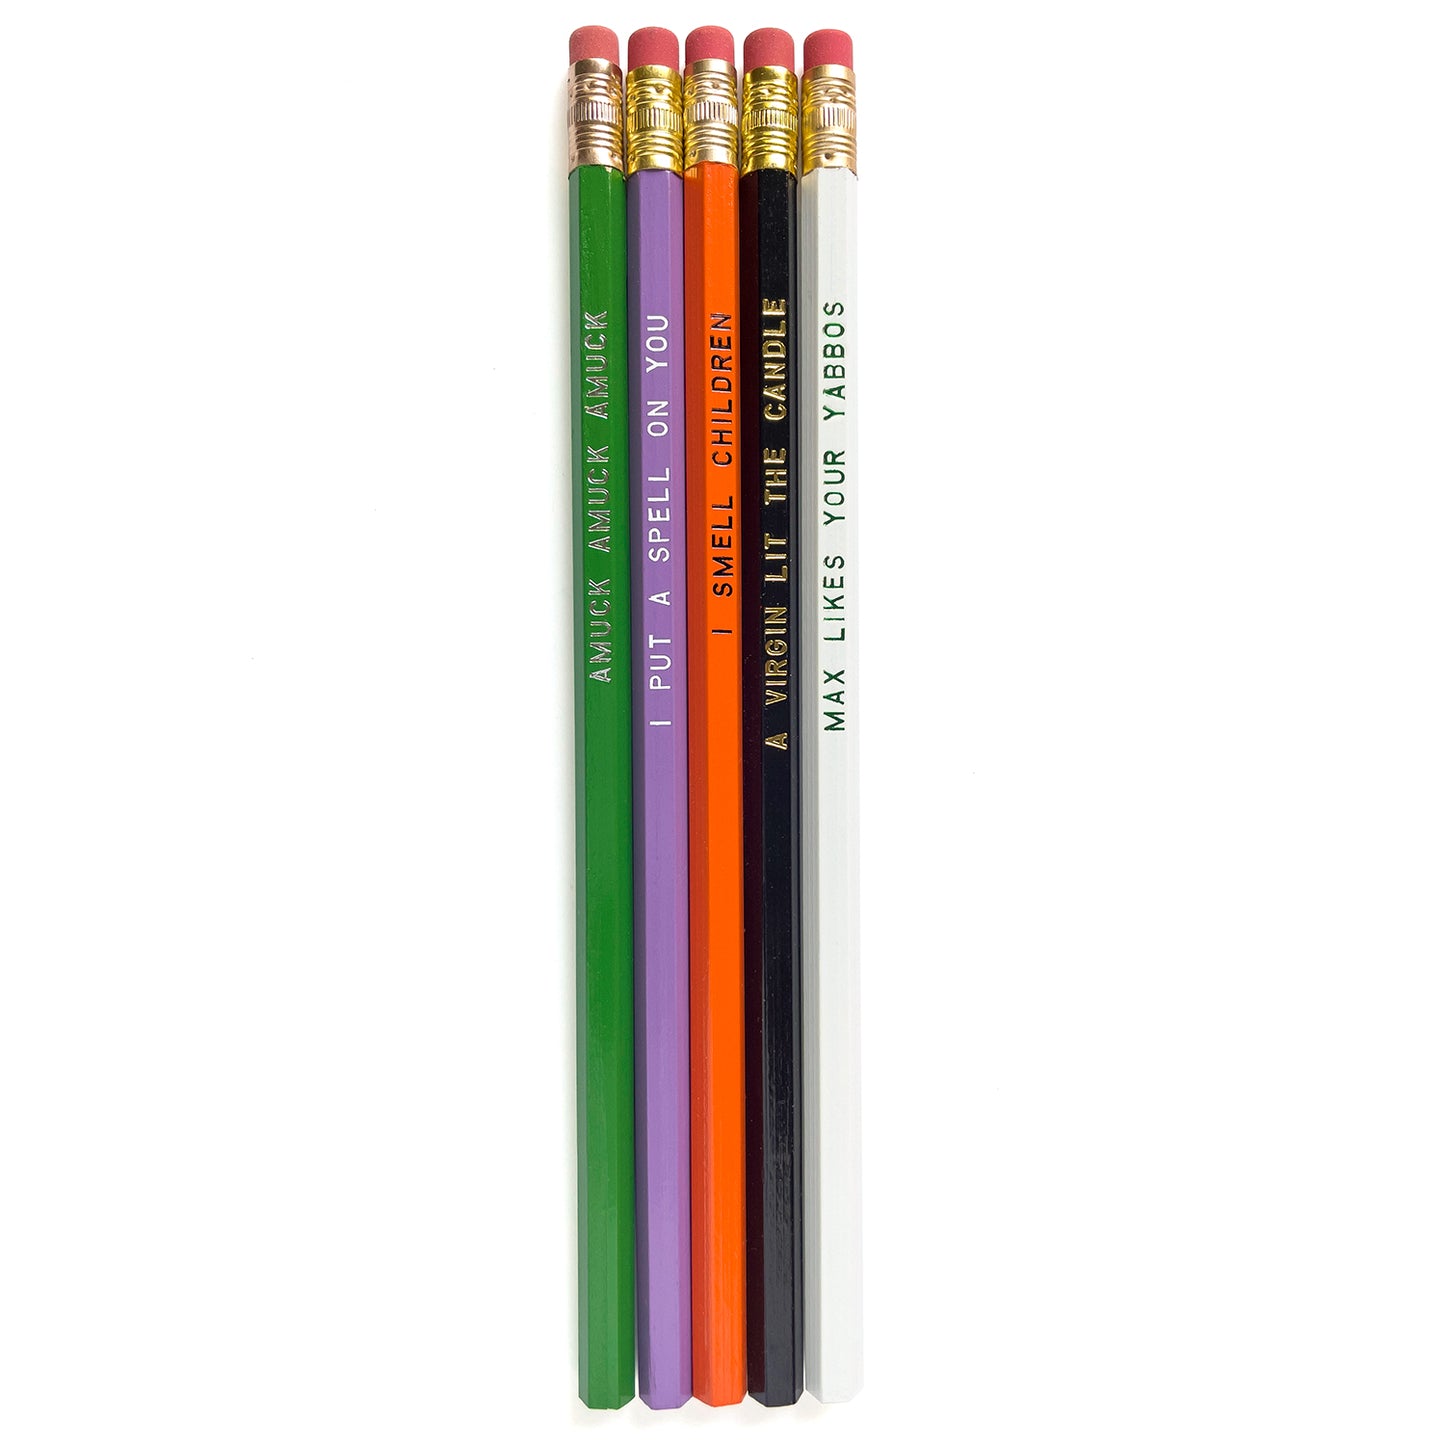 Hocus Pocus Pencils